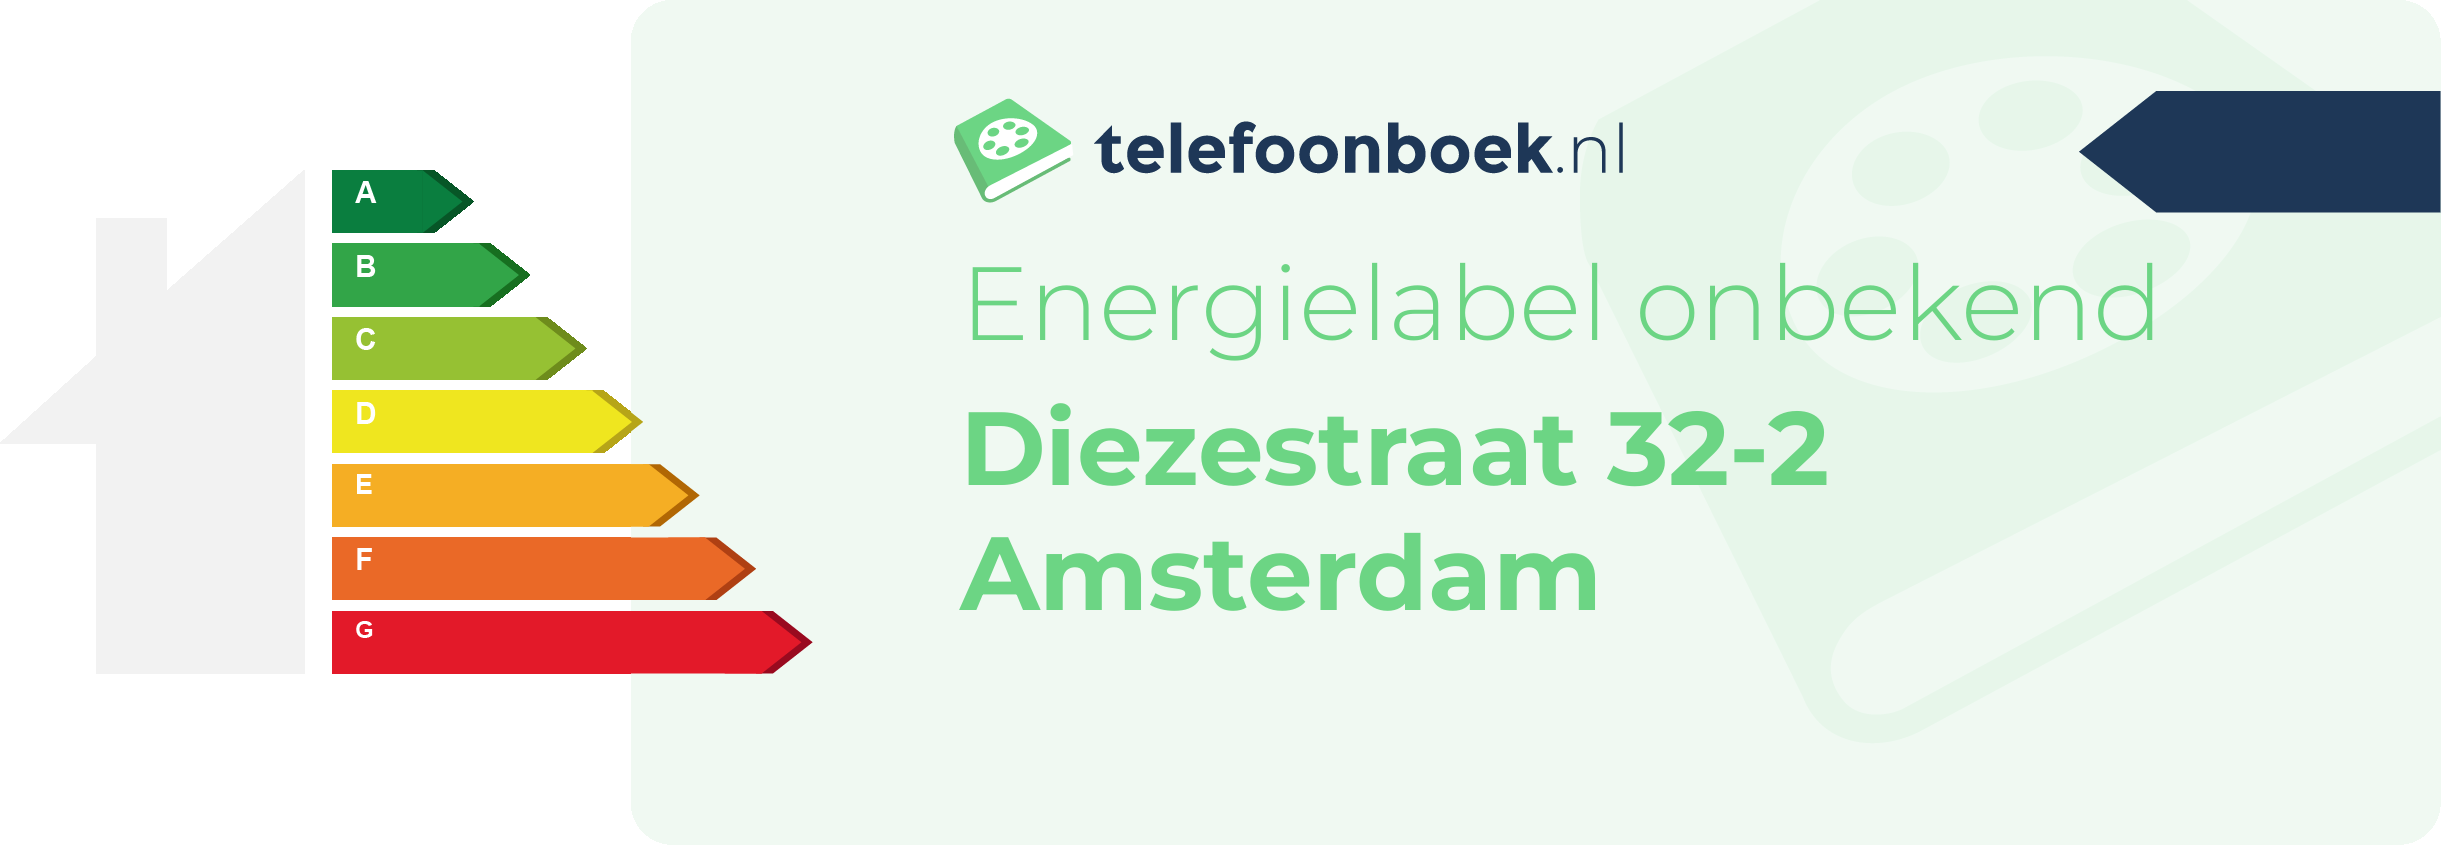 Energielabel Diezestraat 32-2 Amsterdam